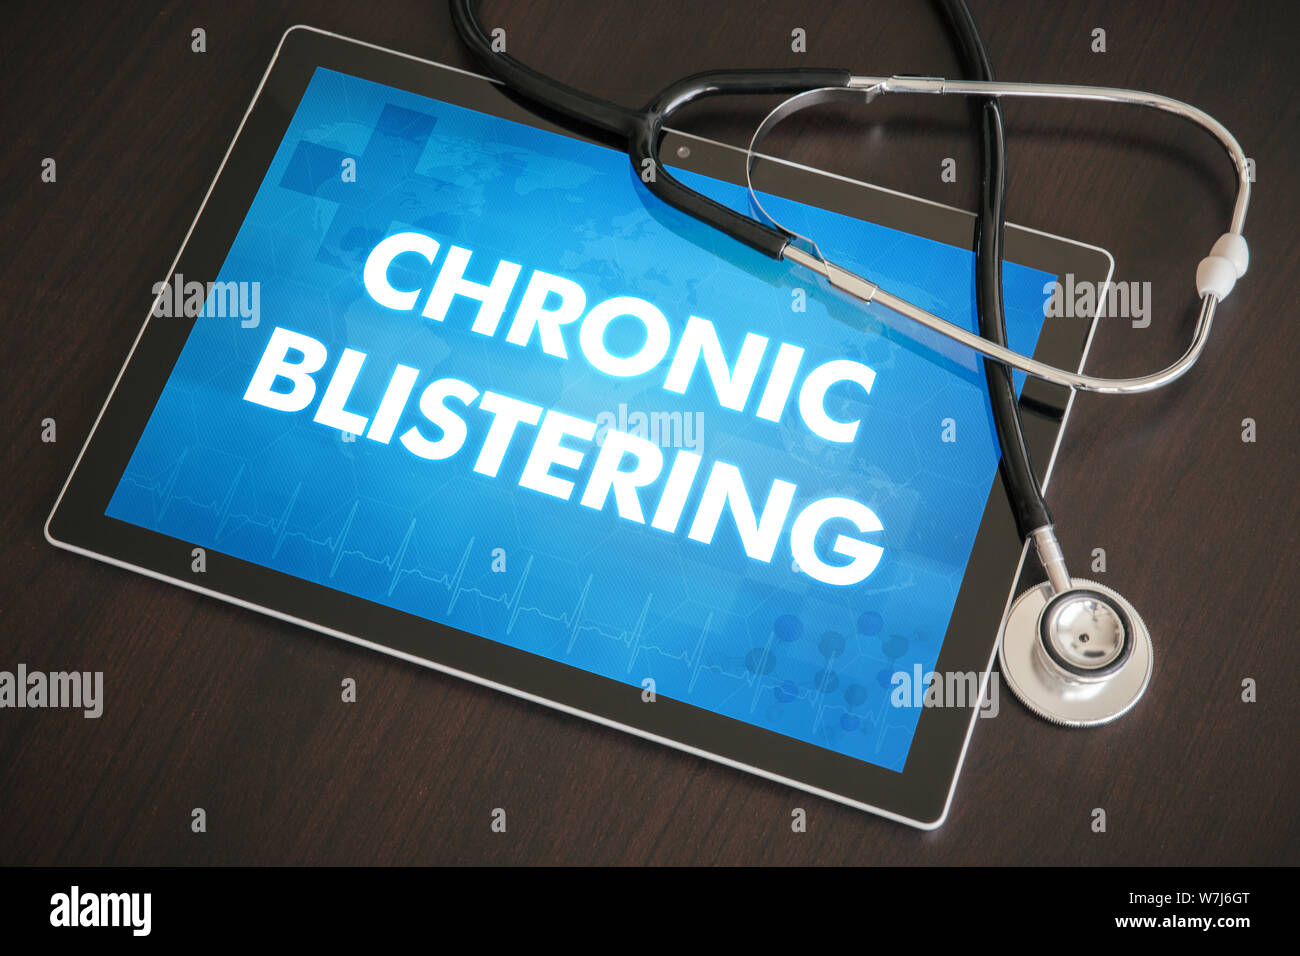 Chronische Blasenbildung (kutane Erkrankung) Diagnose medizinisches Konzept auf Tablet Bildschirm mit Stethoskop. Stockfoto